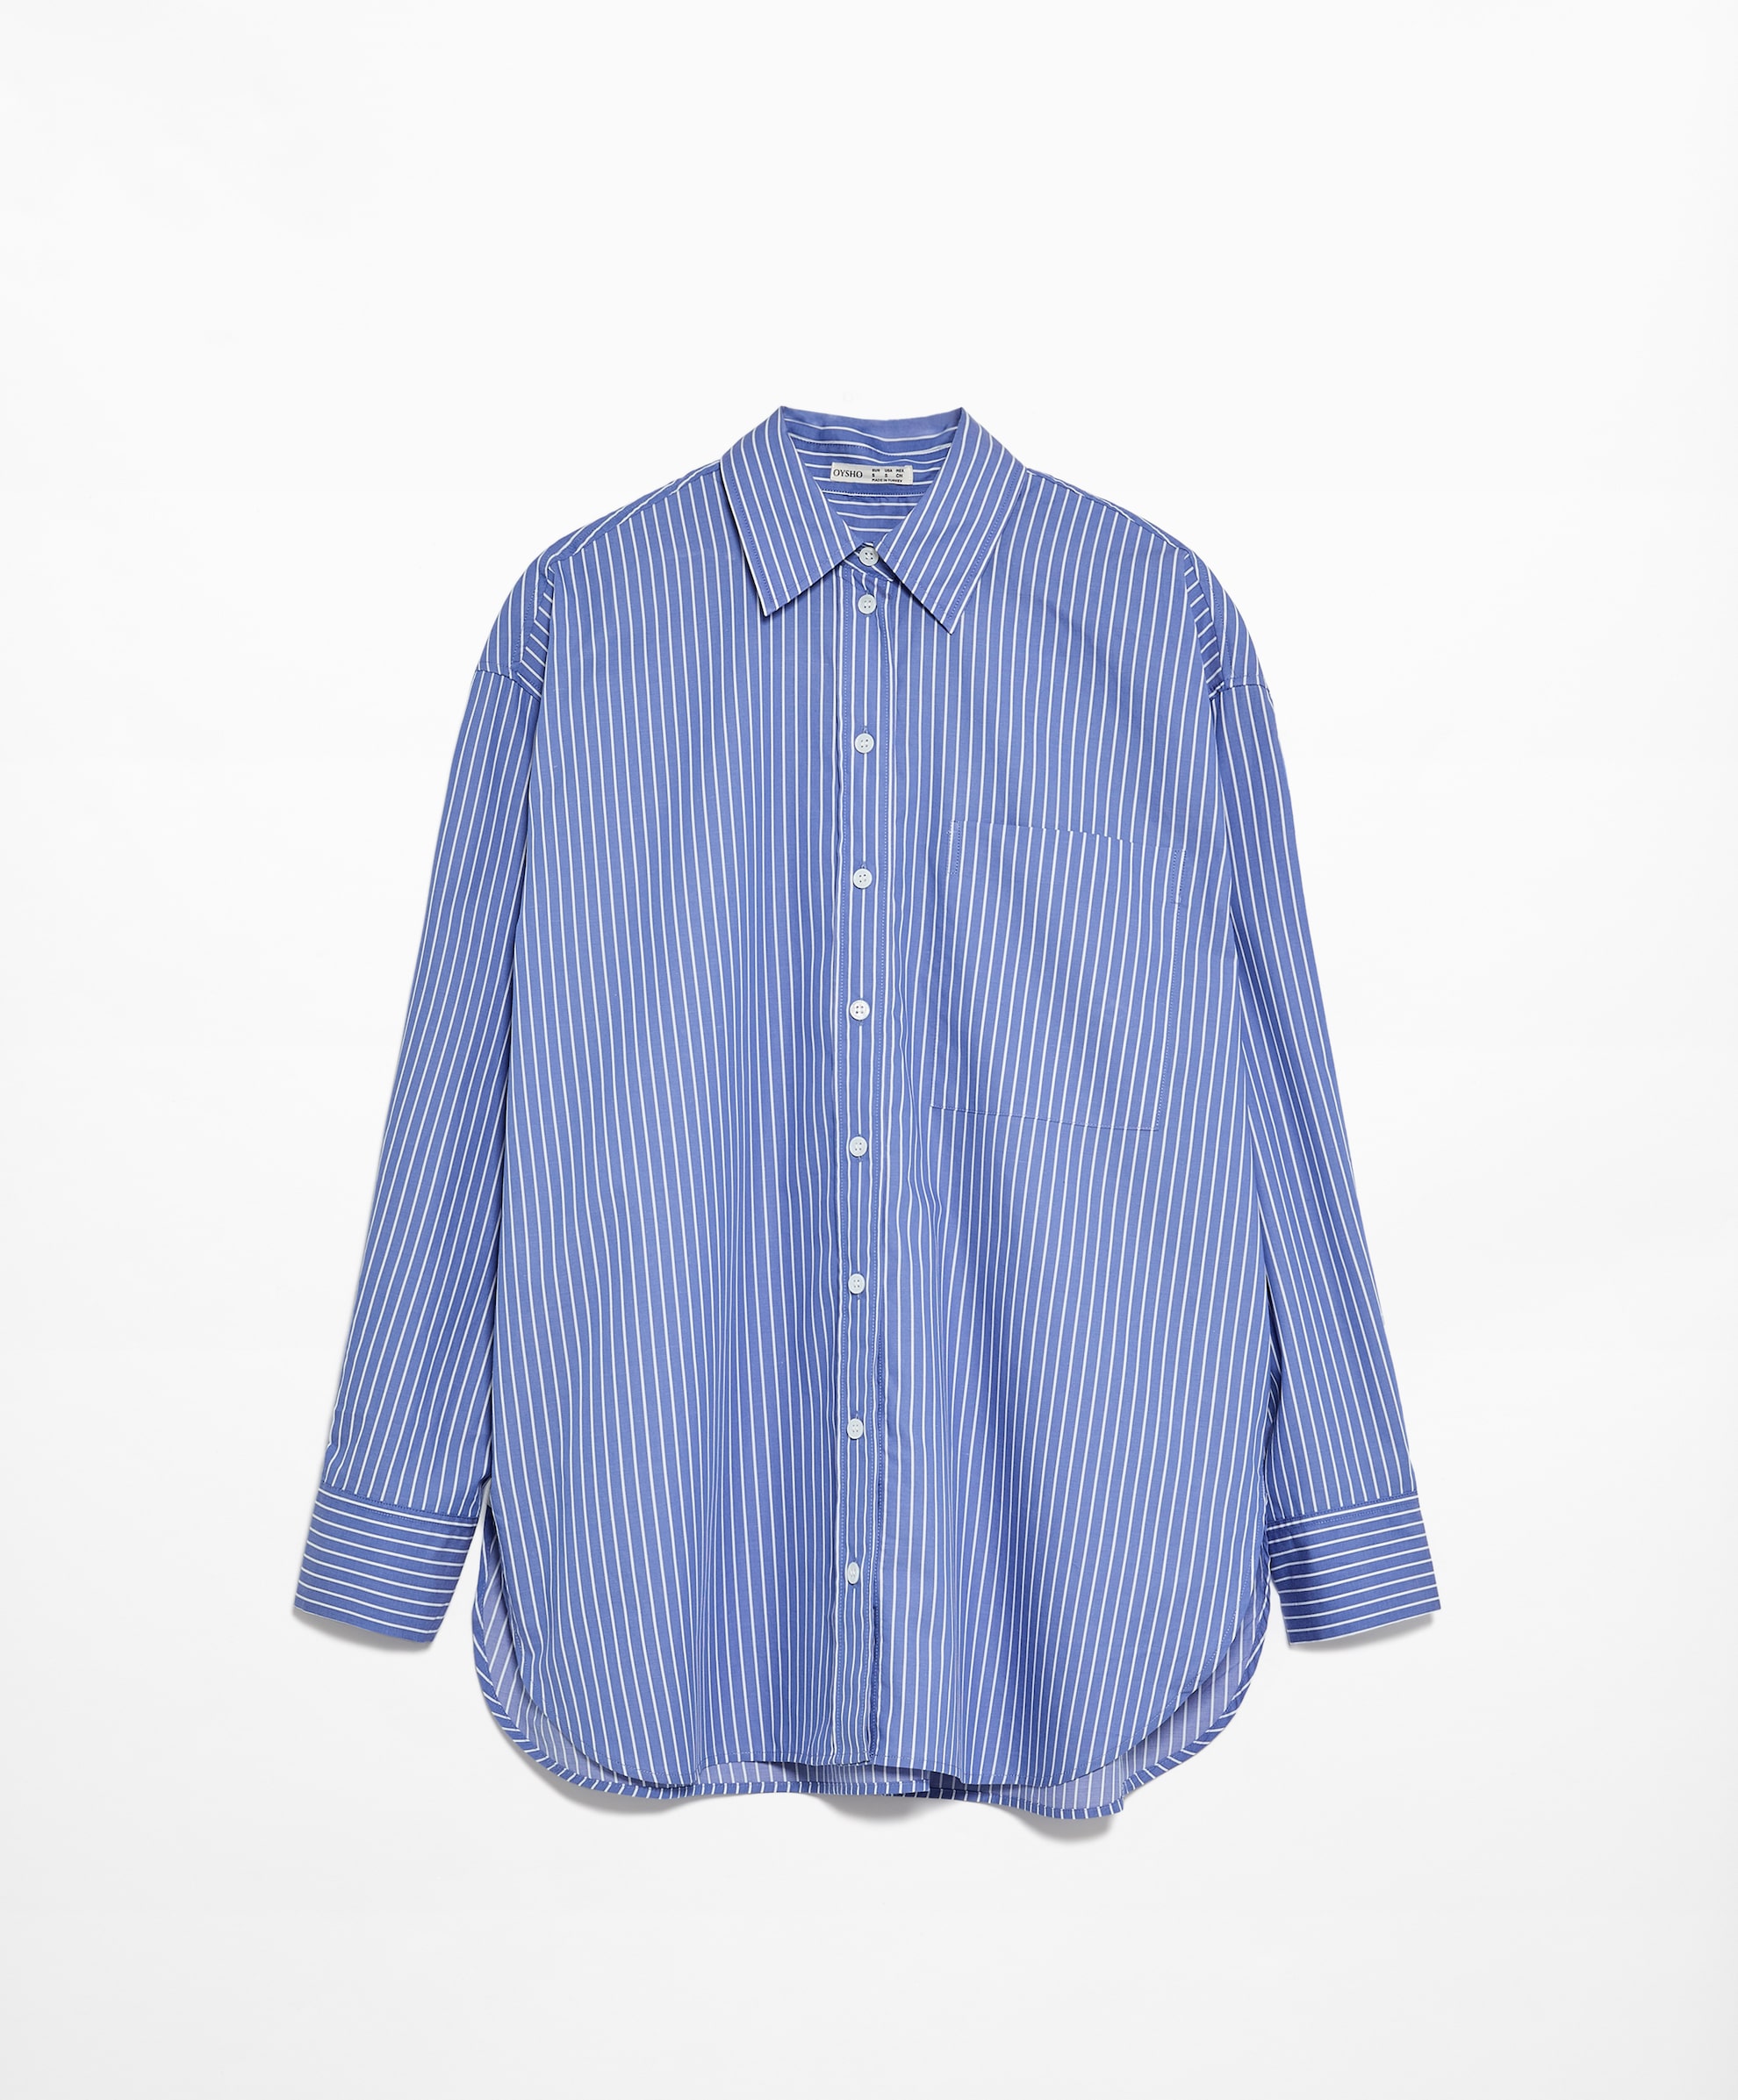 Рубашка Oysho Striped 100% Cotton Long-sleeved, синий рубашка oysho linen long sleeved светло бежевый